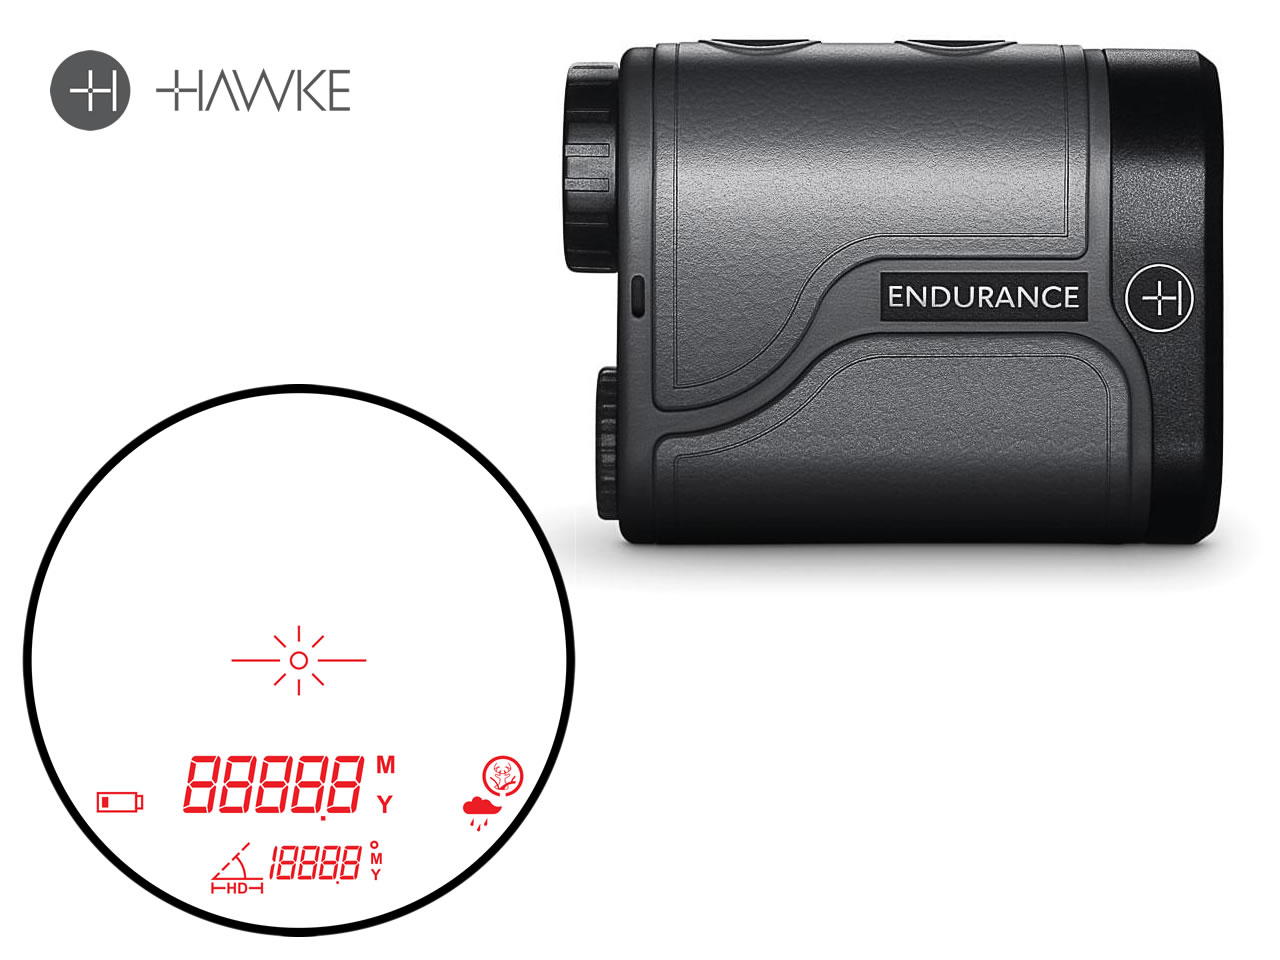 HAWKE Entfernungsmesser Laser Range Finder ENDURANCE 1000, 5 m bis 1000 m, 6-fach Zoom